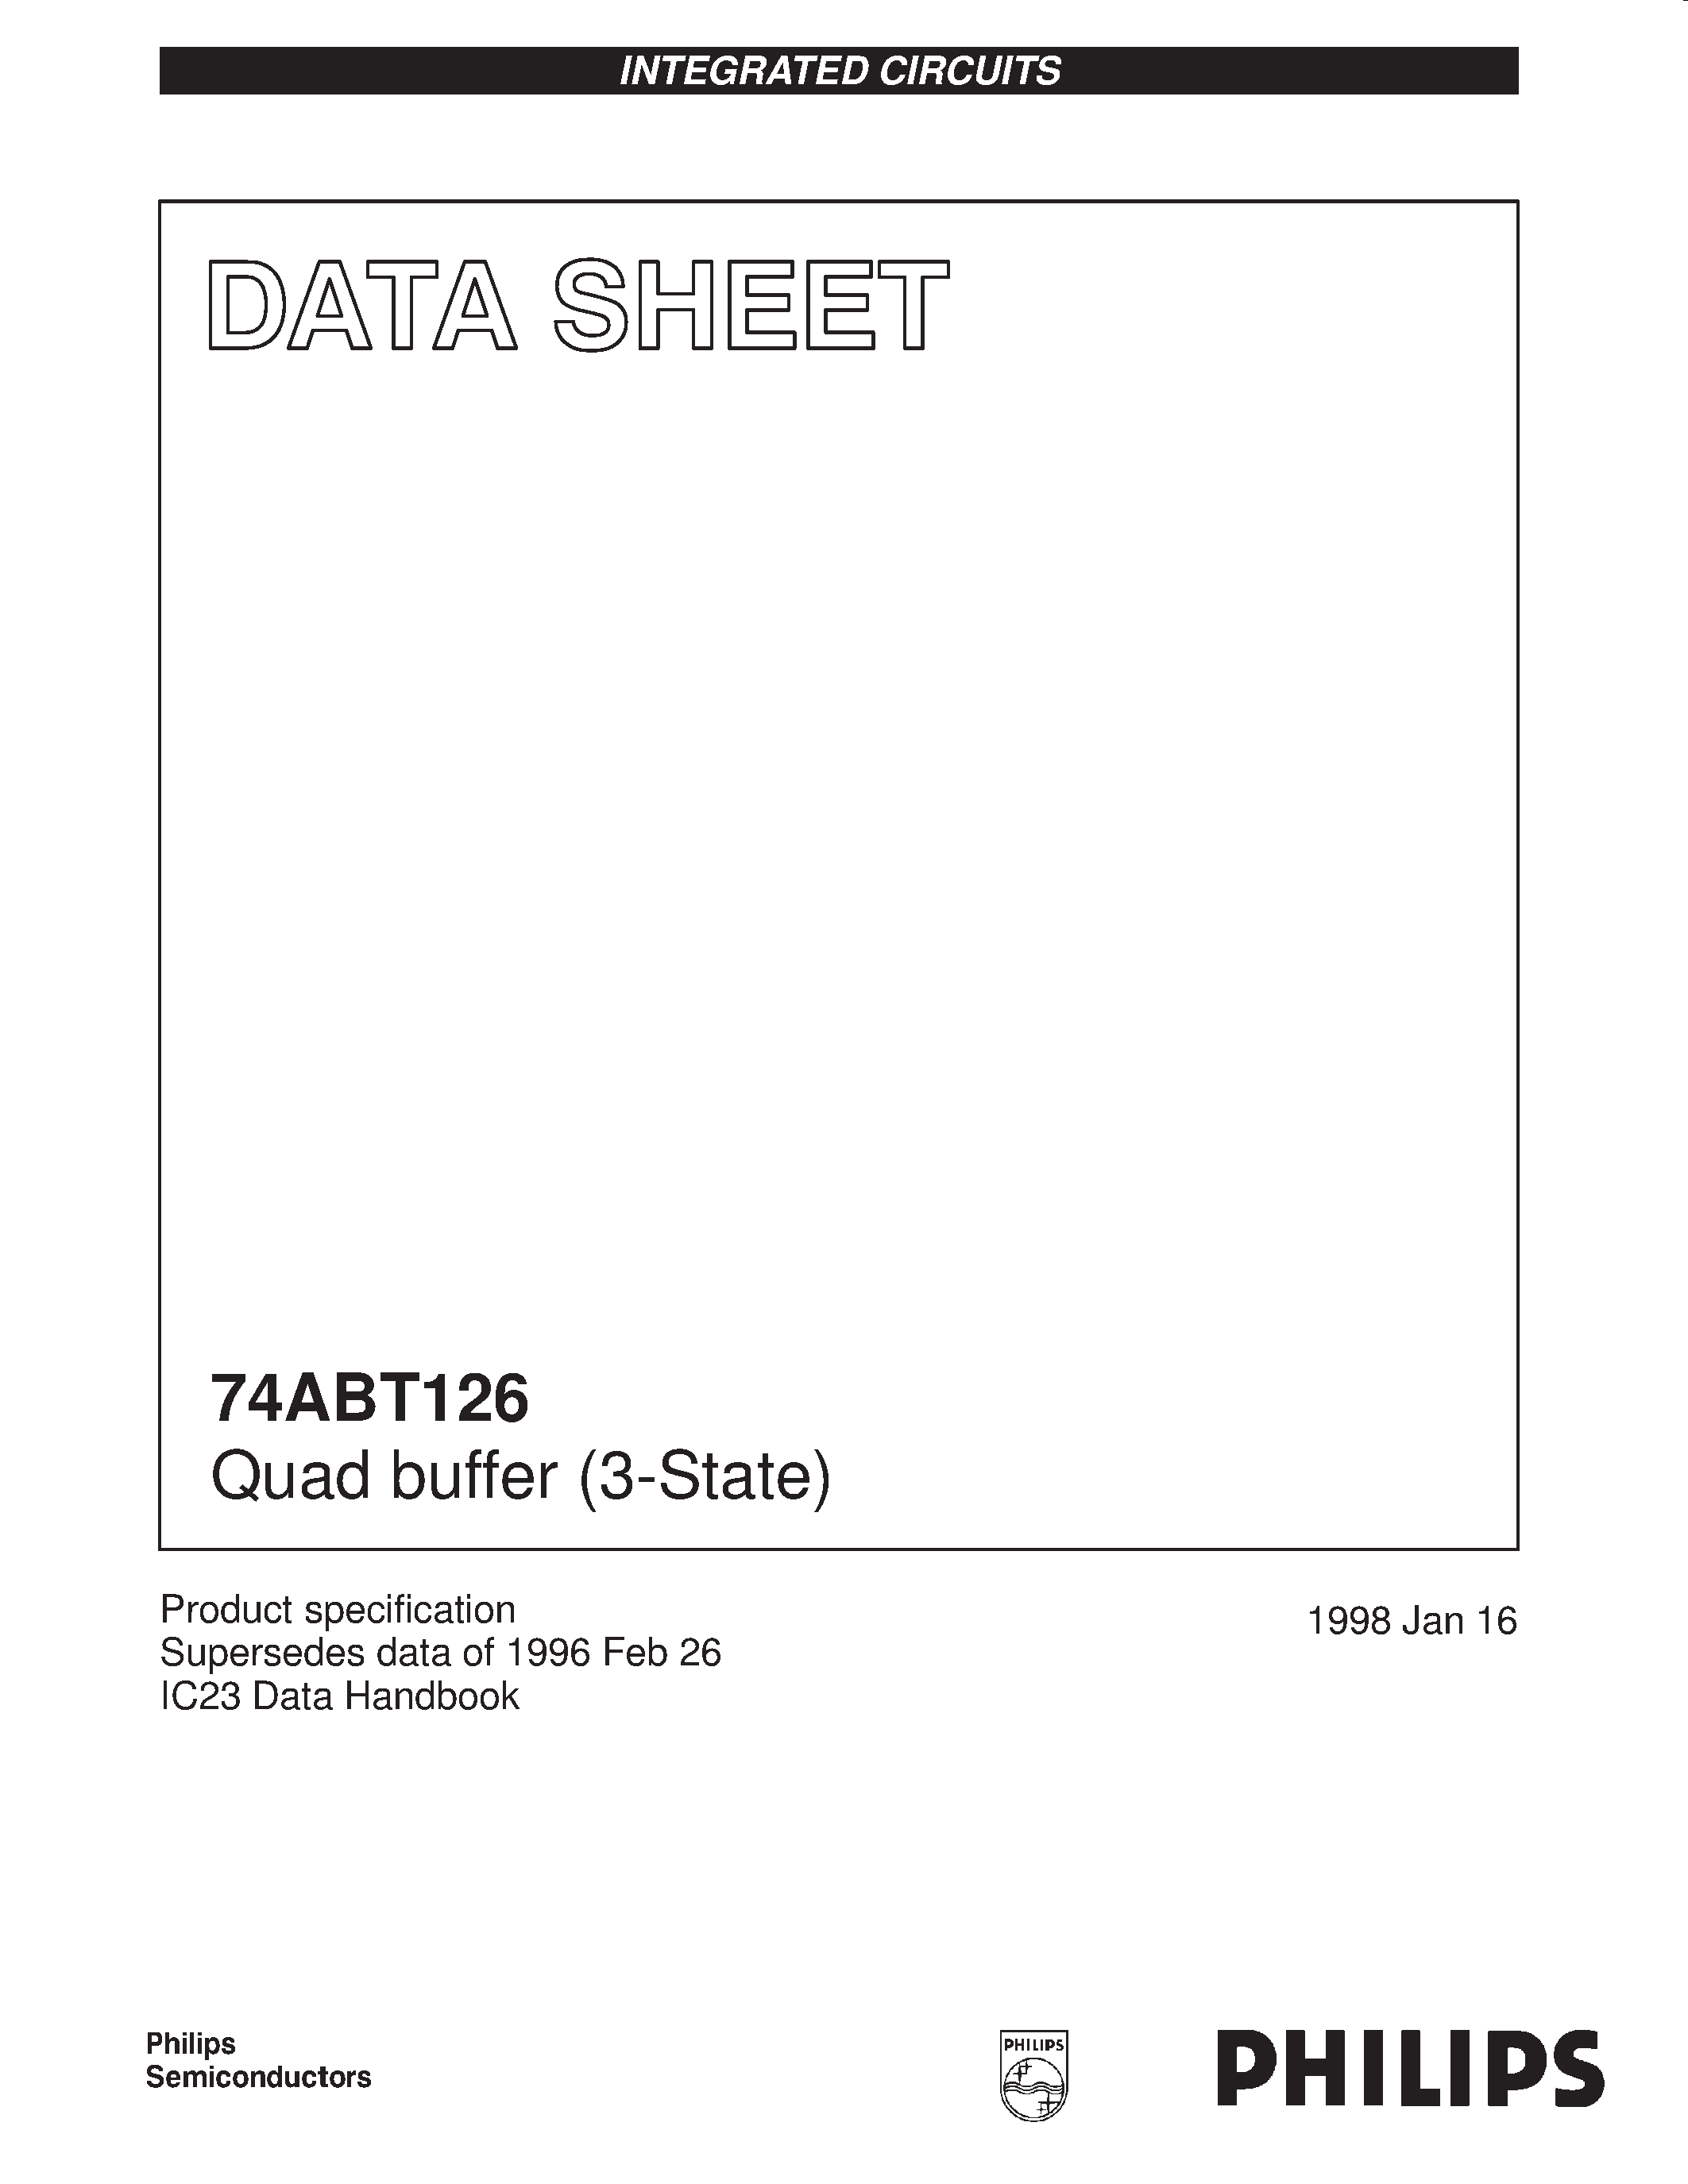 Даташит 74ABT126N - Quad buffer 3-State страница 1